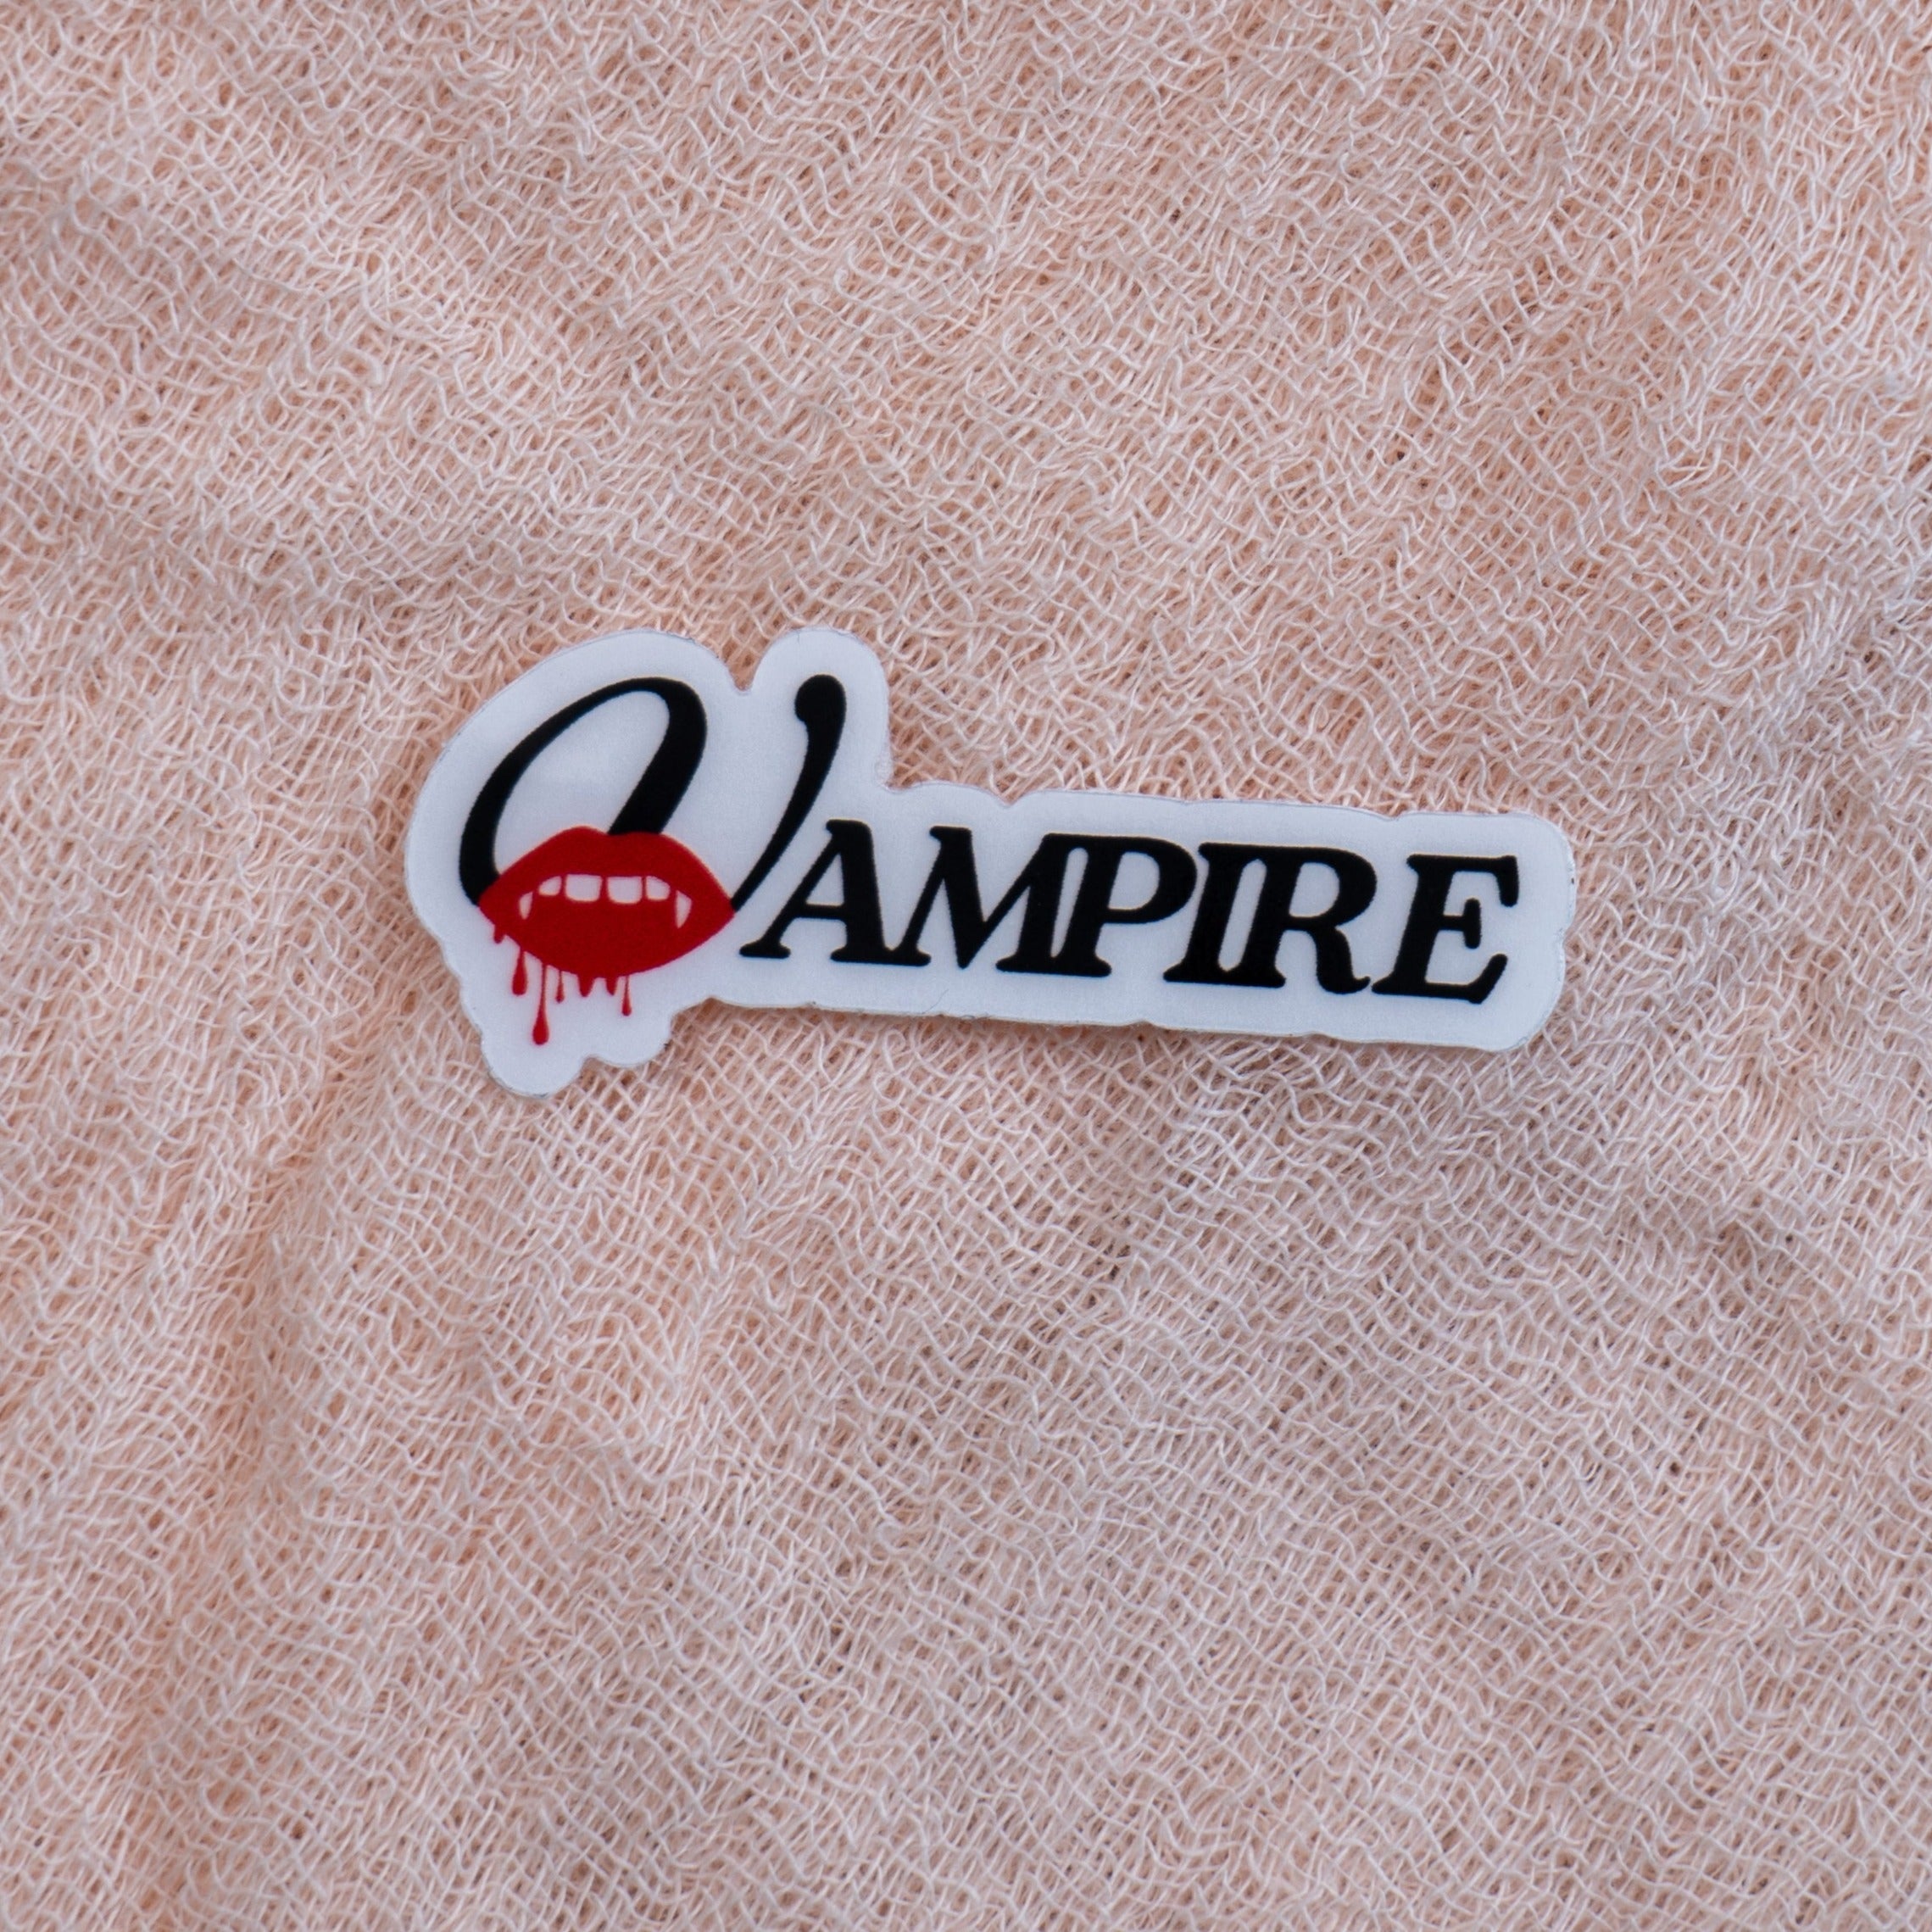 Vampire Sticker - Emacity Threads